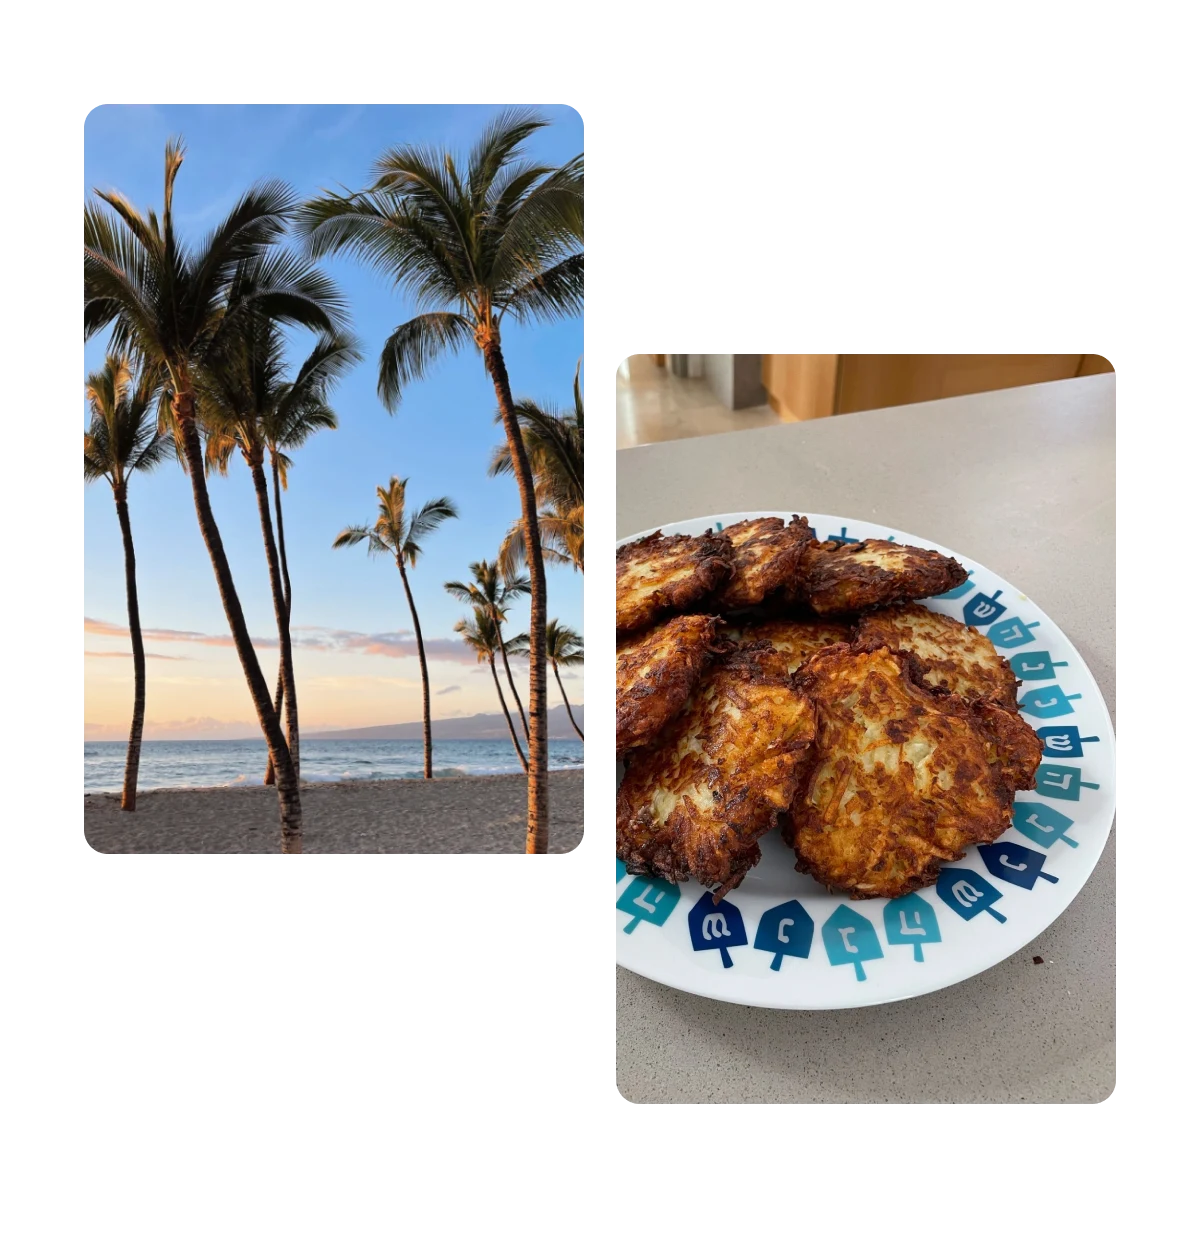 Dois Pins, palmeiras na praia, prato de latkes de batata